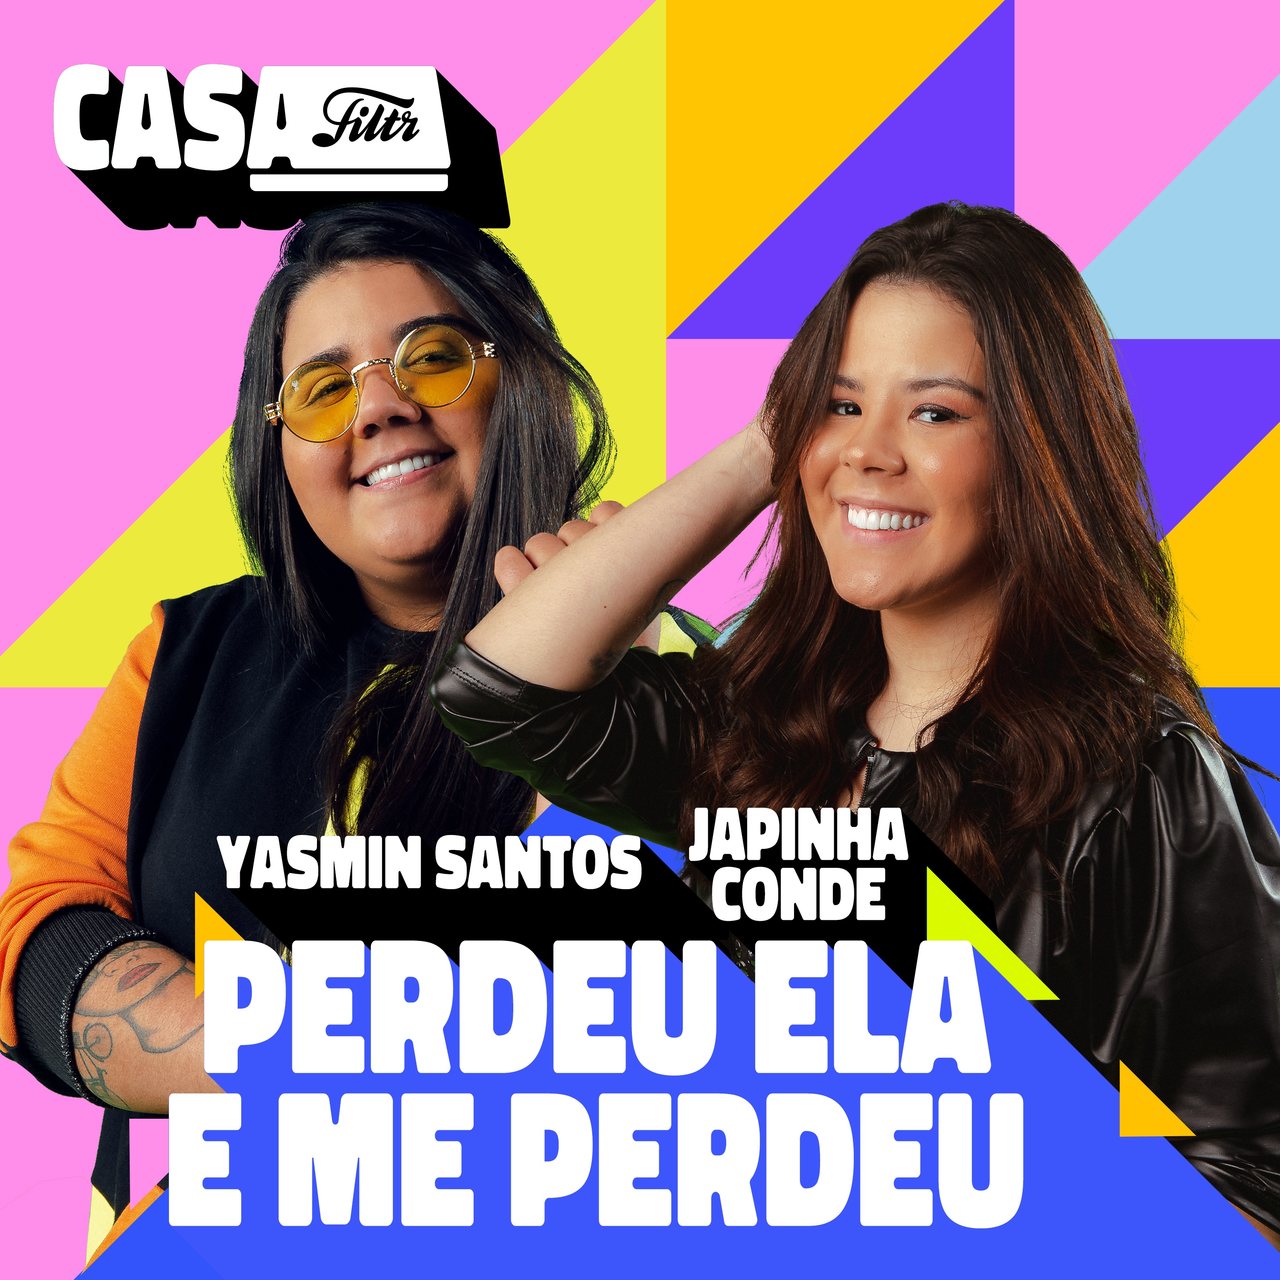 Yasmin Santos e Japinha Conde cantam sobre amor e vingança em "Perdeu Ela E Me Perdeu", nova parceria inédita do Casa Filtr 42